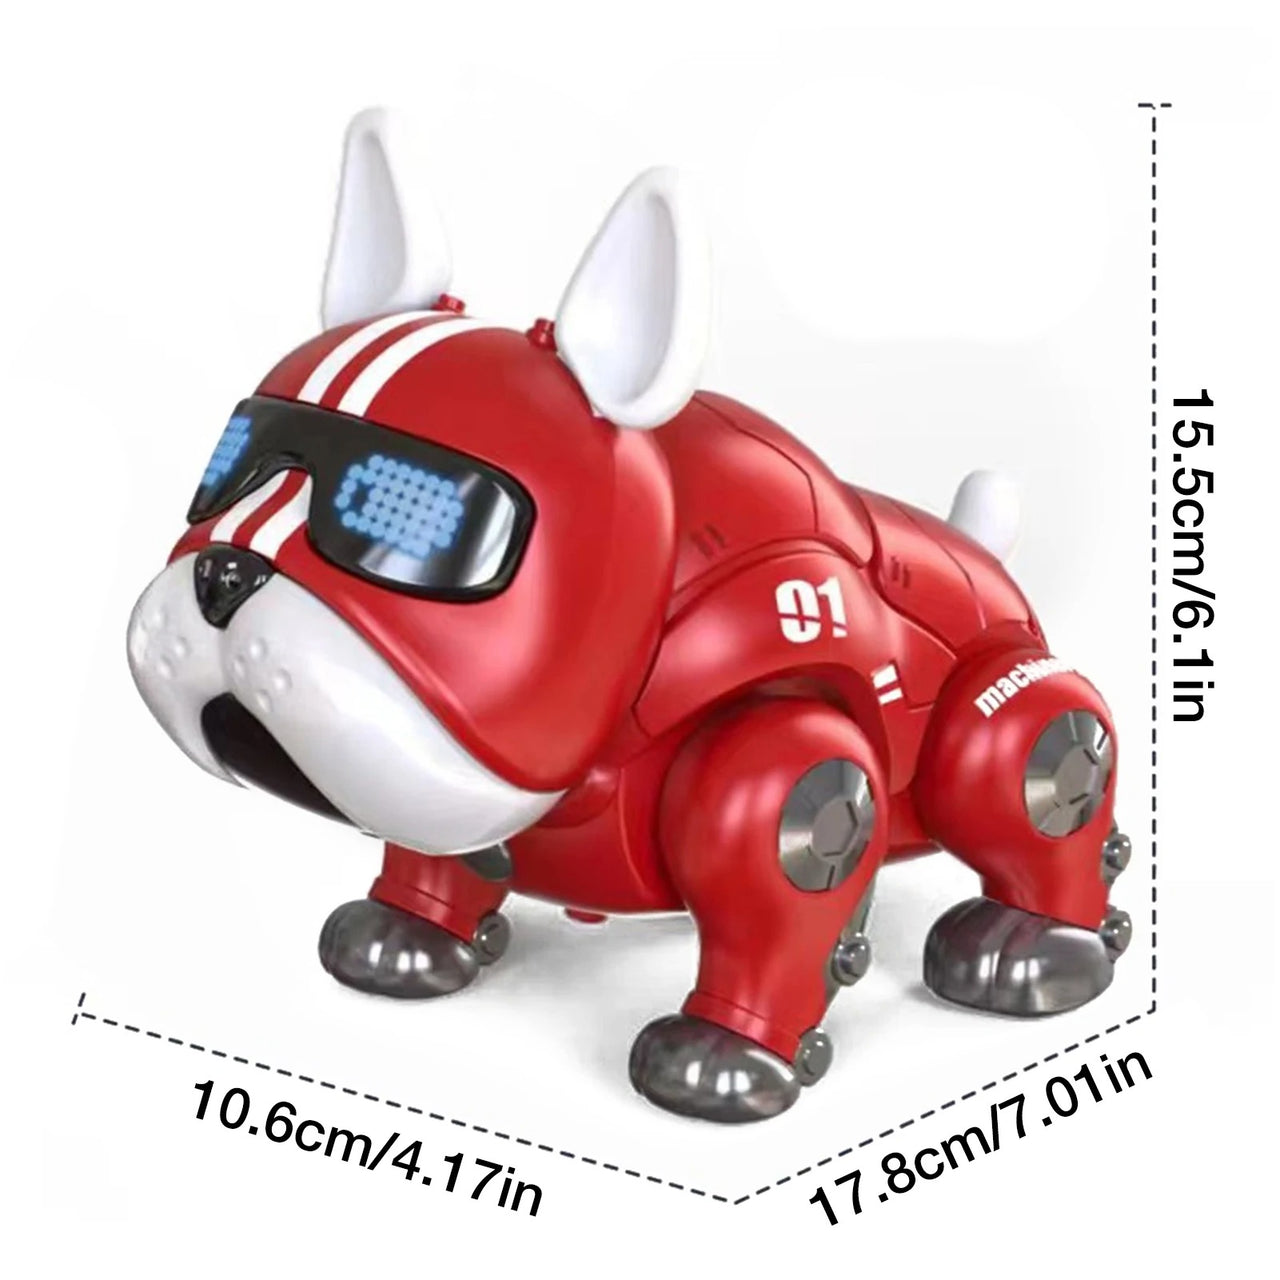 Robot Bull Dog Intelligent Toy Animal